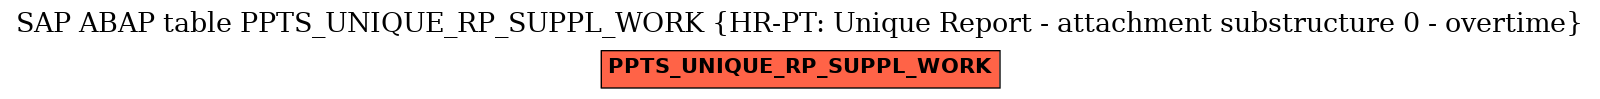 E-R Diagram for table PPTS_UNIQUE_RP_SUPPL_WORK (HR-PT: Unique Report - attachment substructure 0 - overtime)